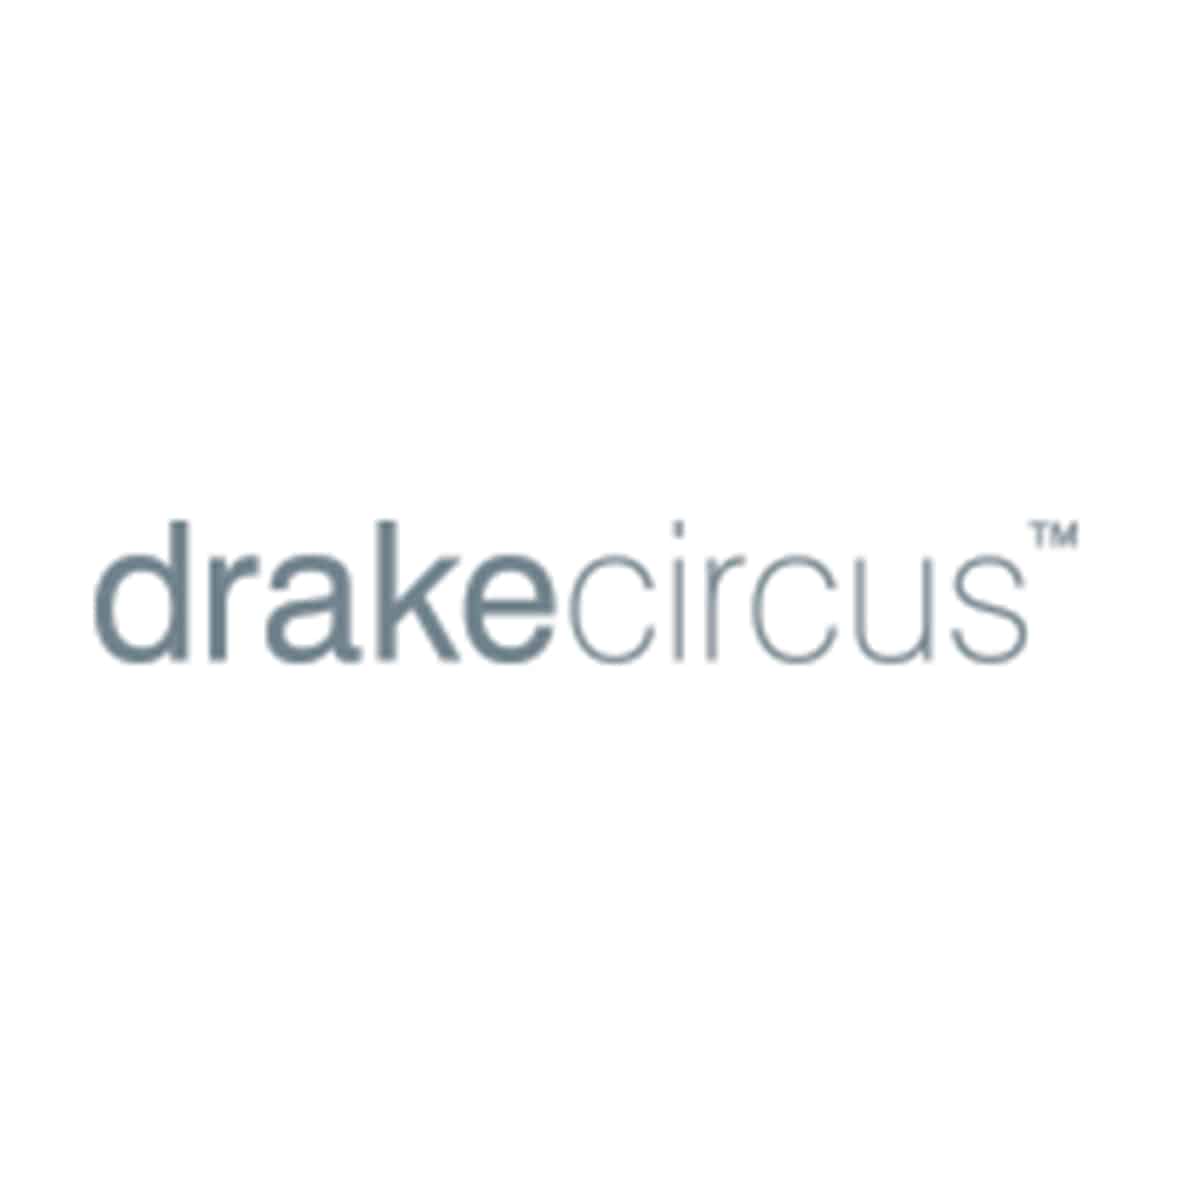 drake circus logo